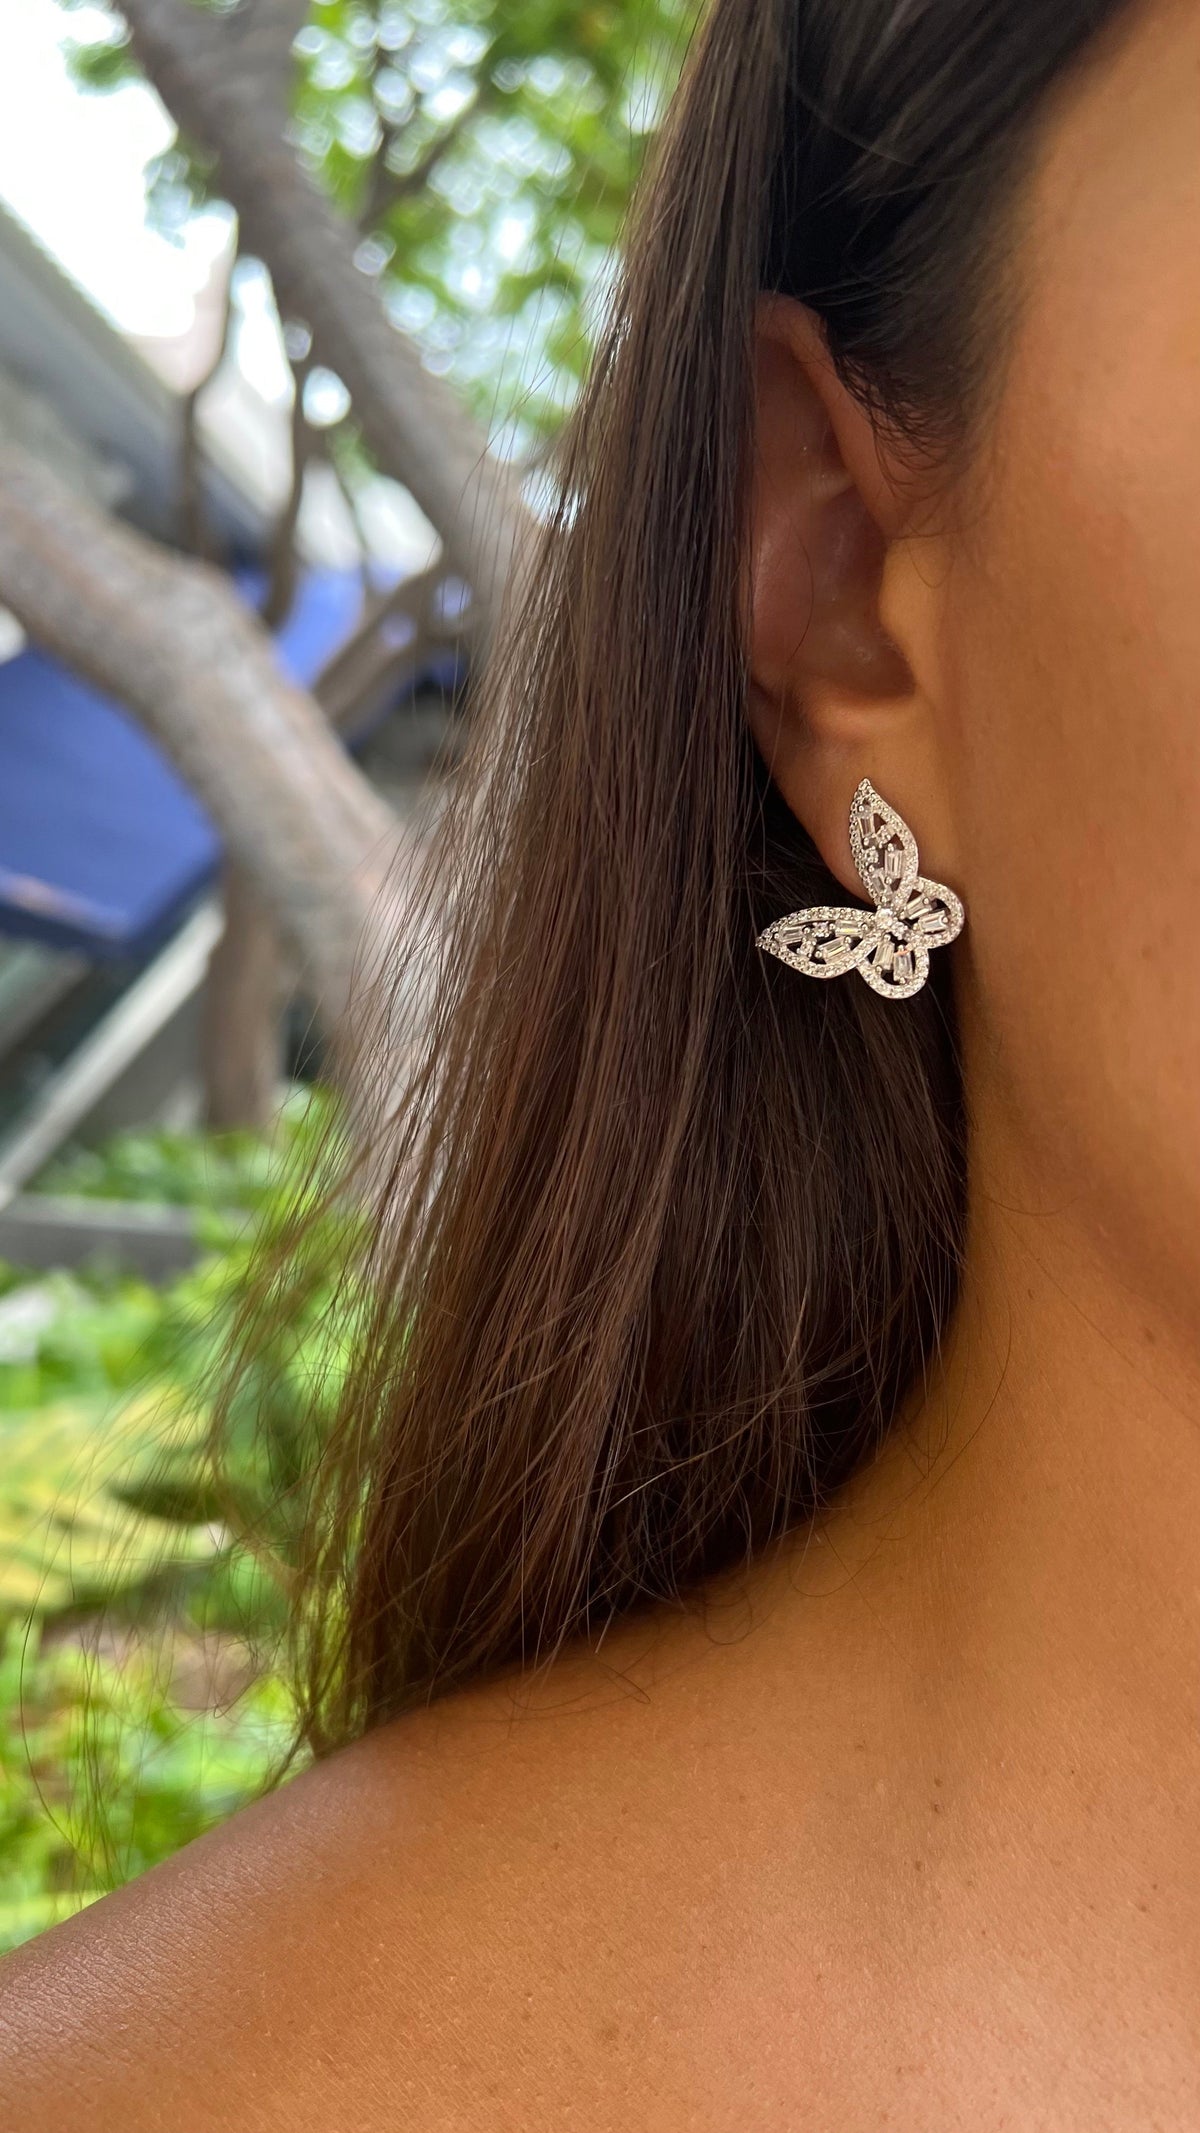 Large butterfly Diamond CZ .925 sterling silver earrings Butterfly earrings Miami, Event jewelry, wedding jewelry bridesmaids jewelry effect earrings , date jewelry Birthday Jewelry designer earrings 